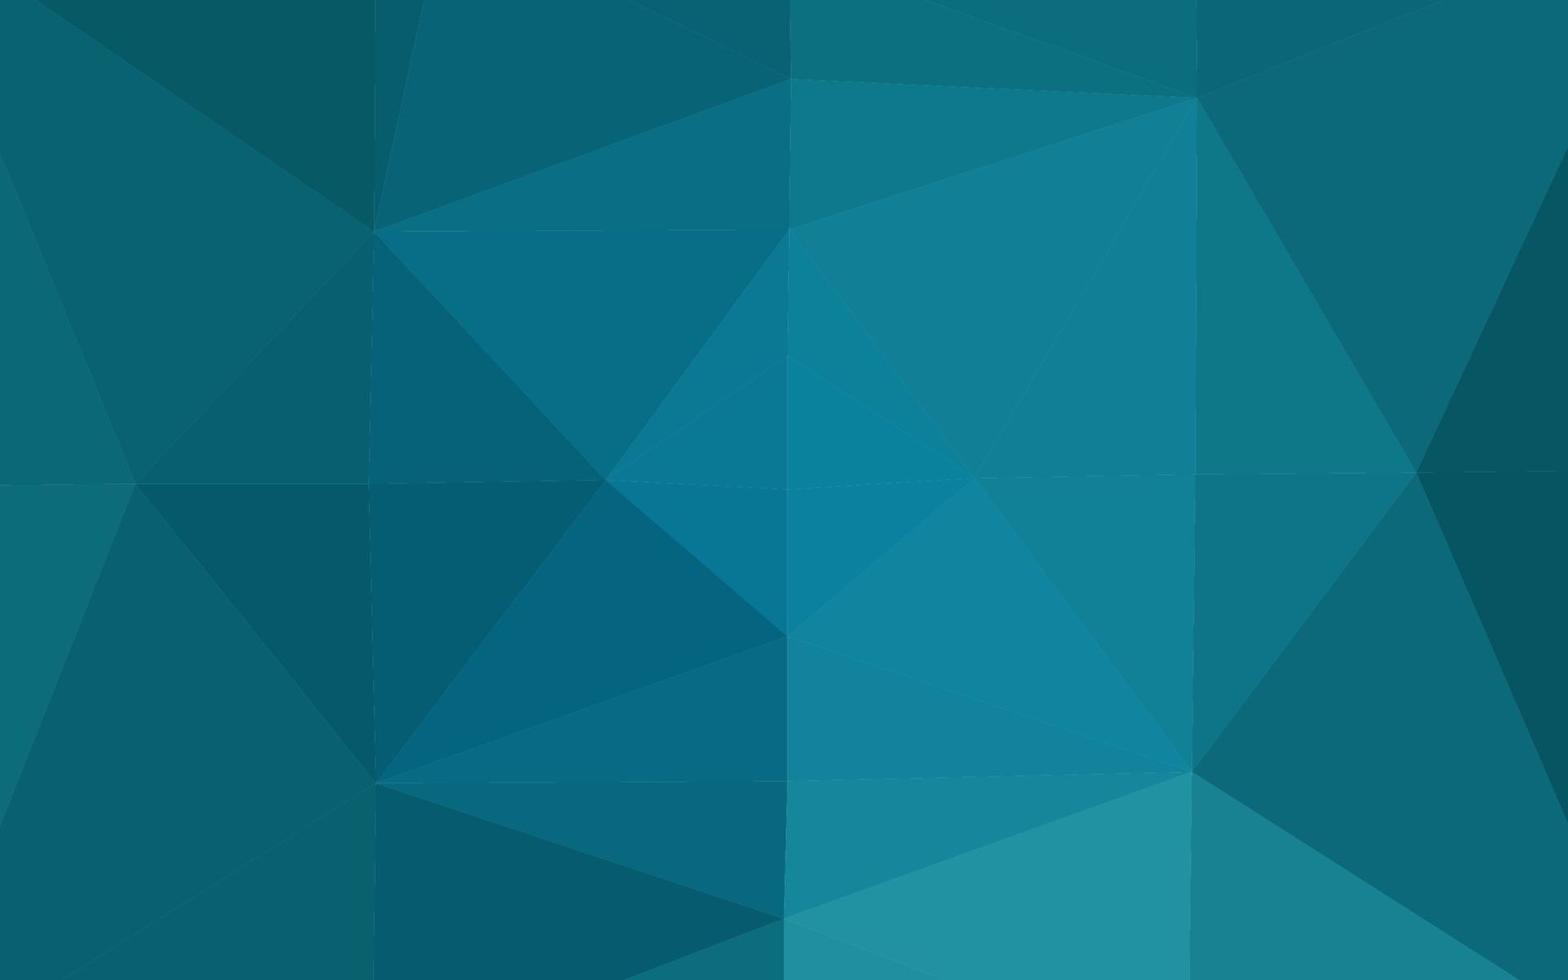 motif de triangle flou de vecteur bleu foncé.